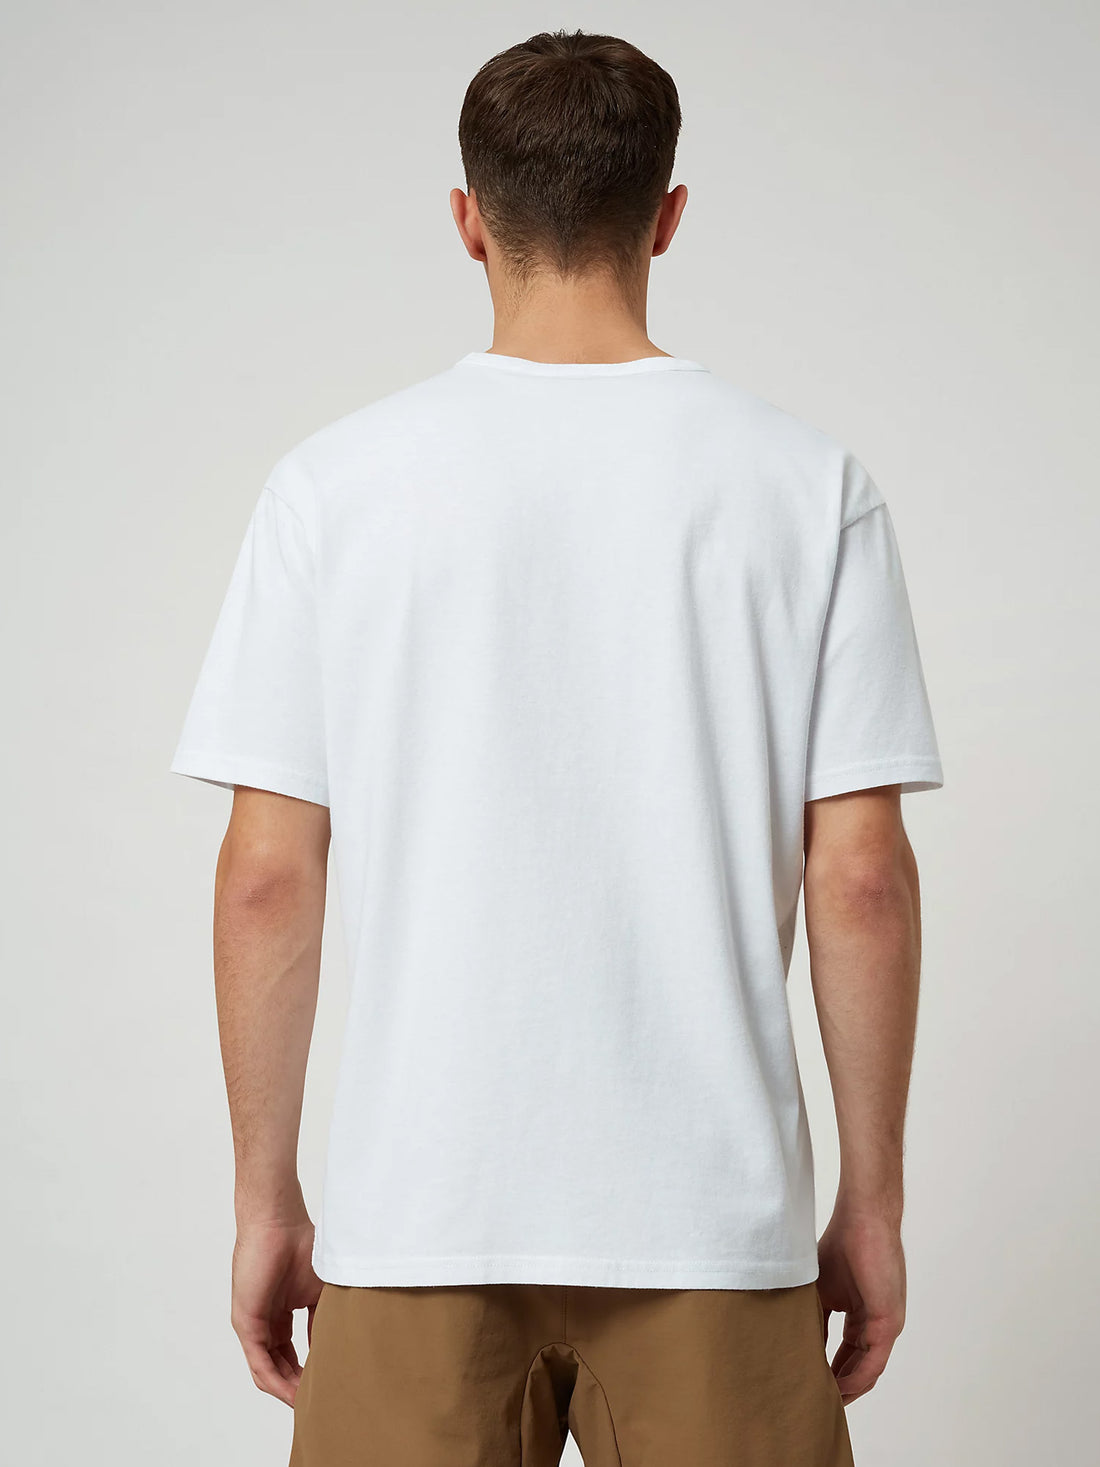 T-shirt Bianco Ft81 Napapijri